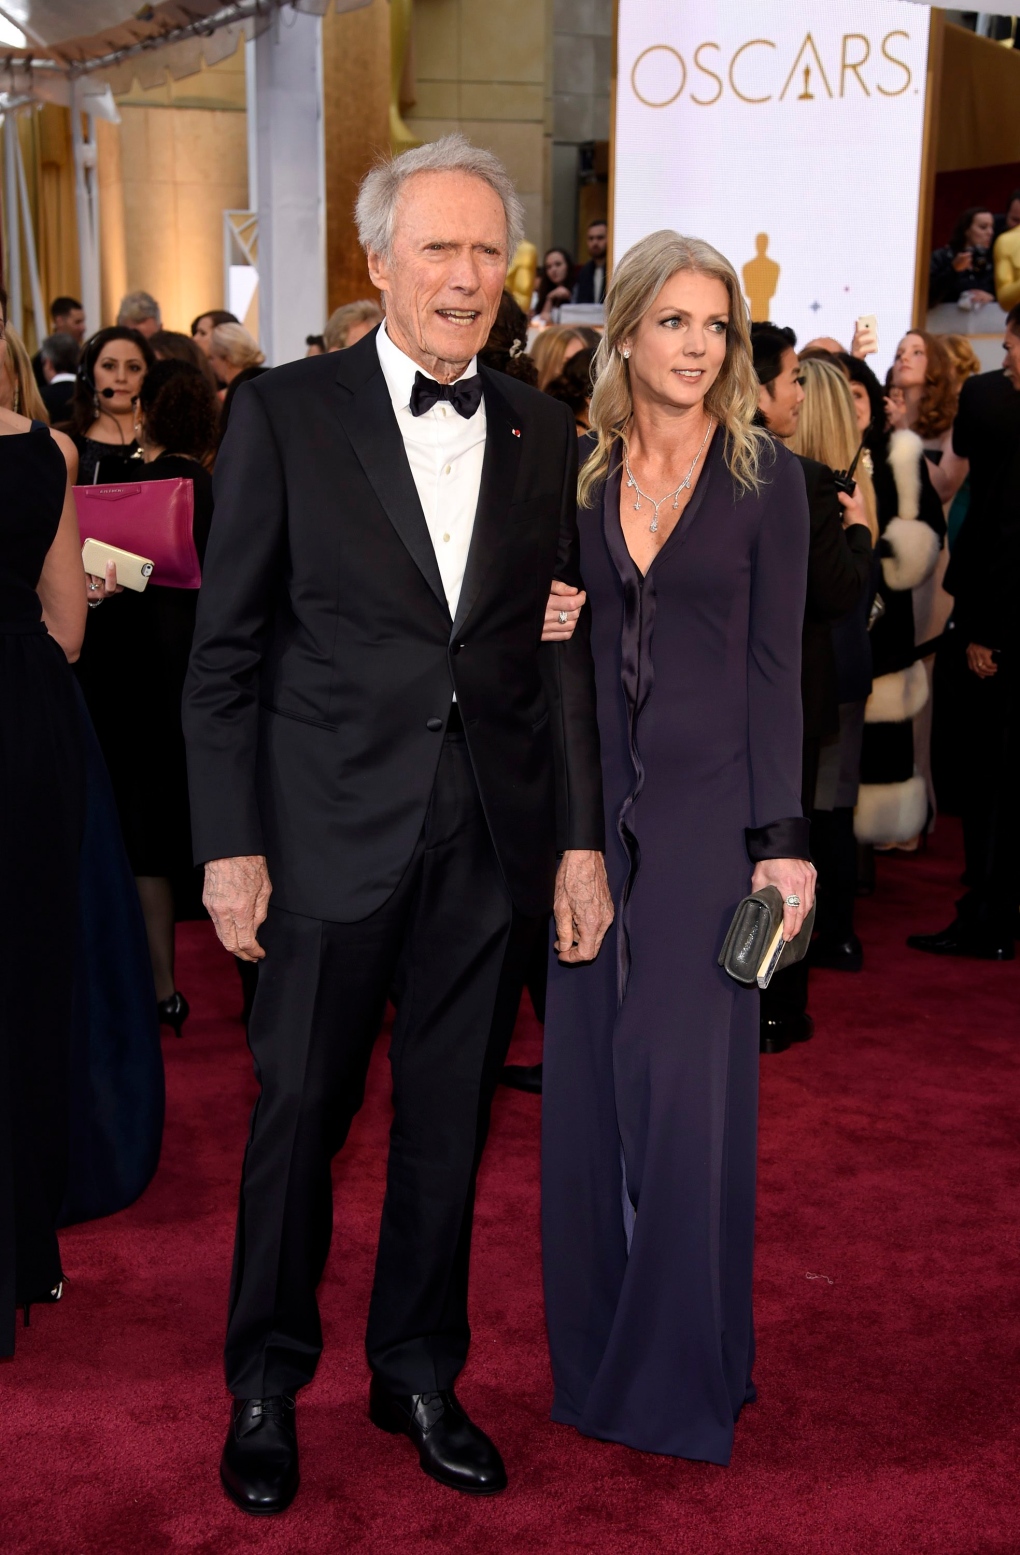 2015 Oscars Red Carpet | CP24.com